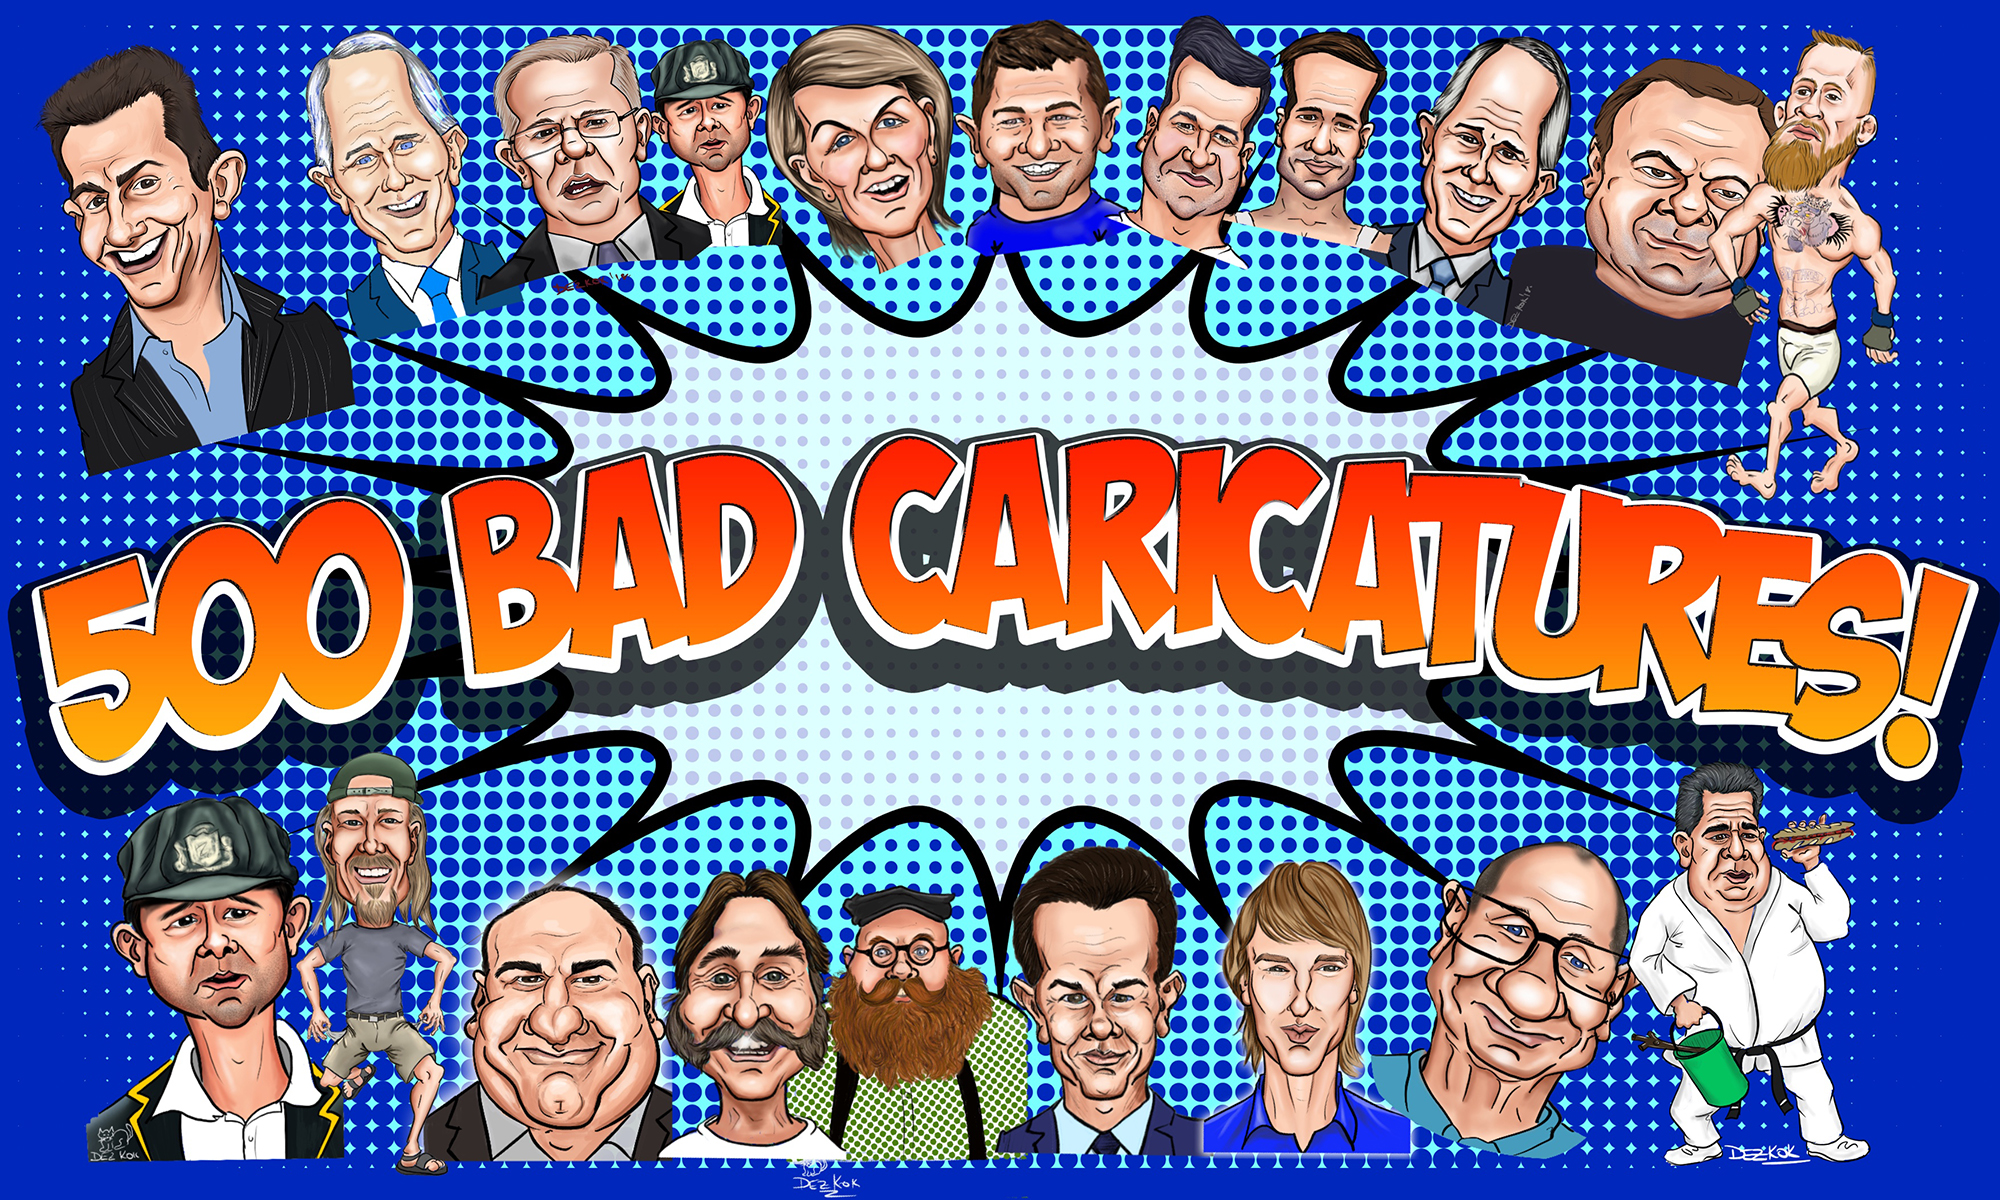 500 Bad Caricatures